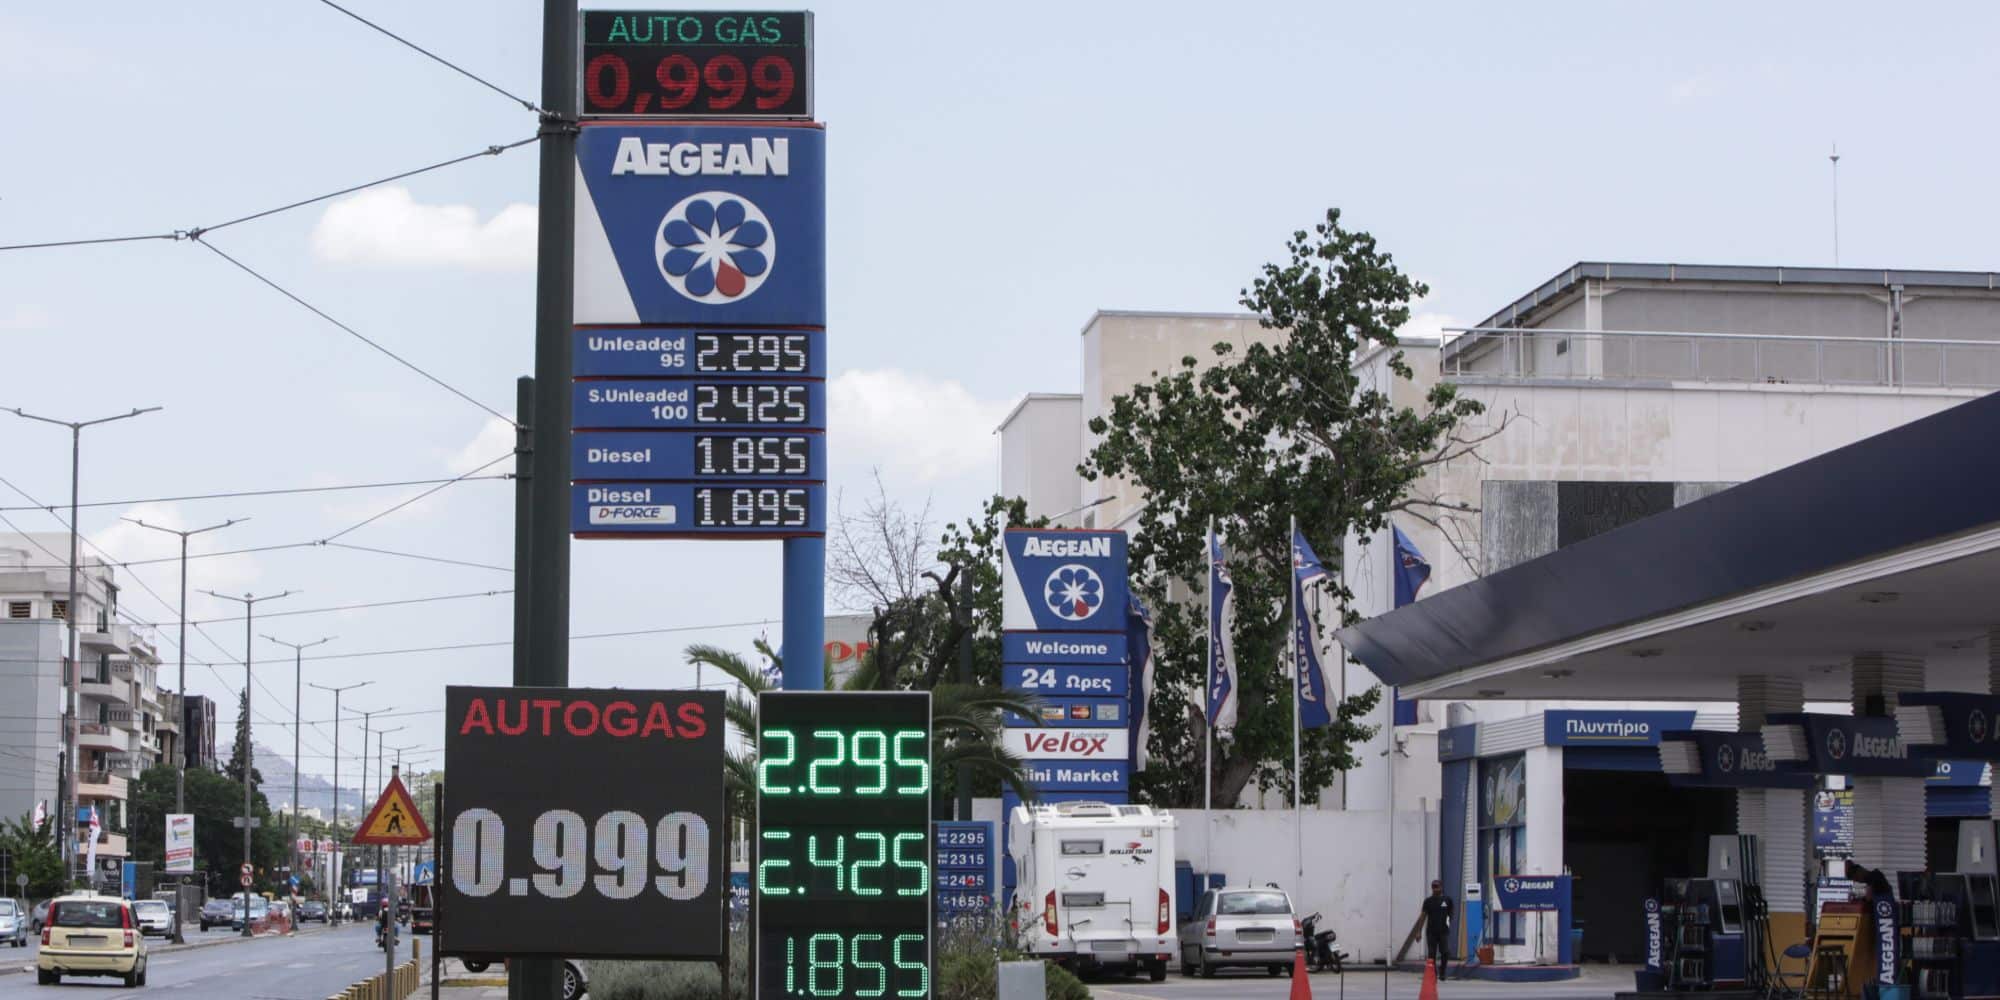 Οι τιμές των καυσίμων σε βενζινάδικο της Aegean